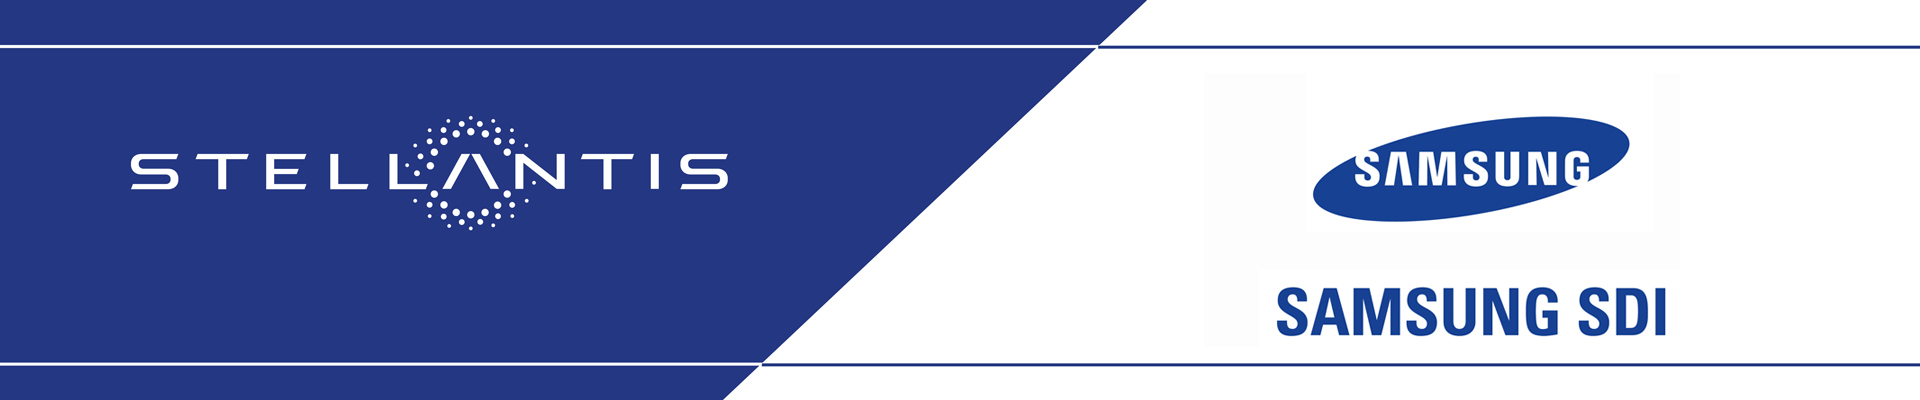 Image de Stellantis and Samsung logo